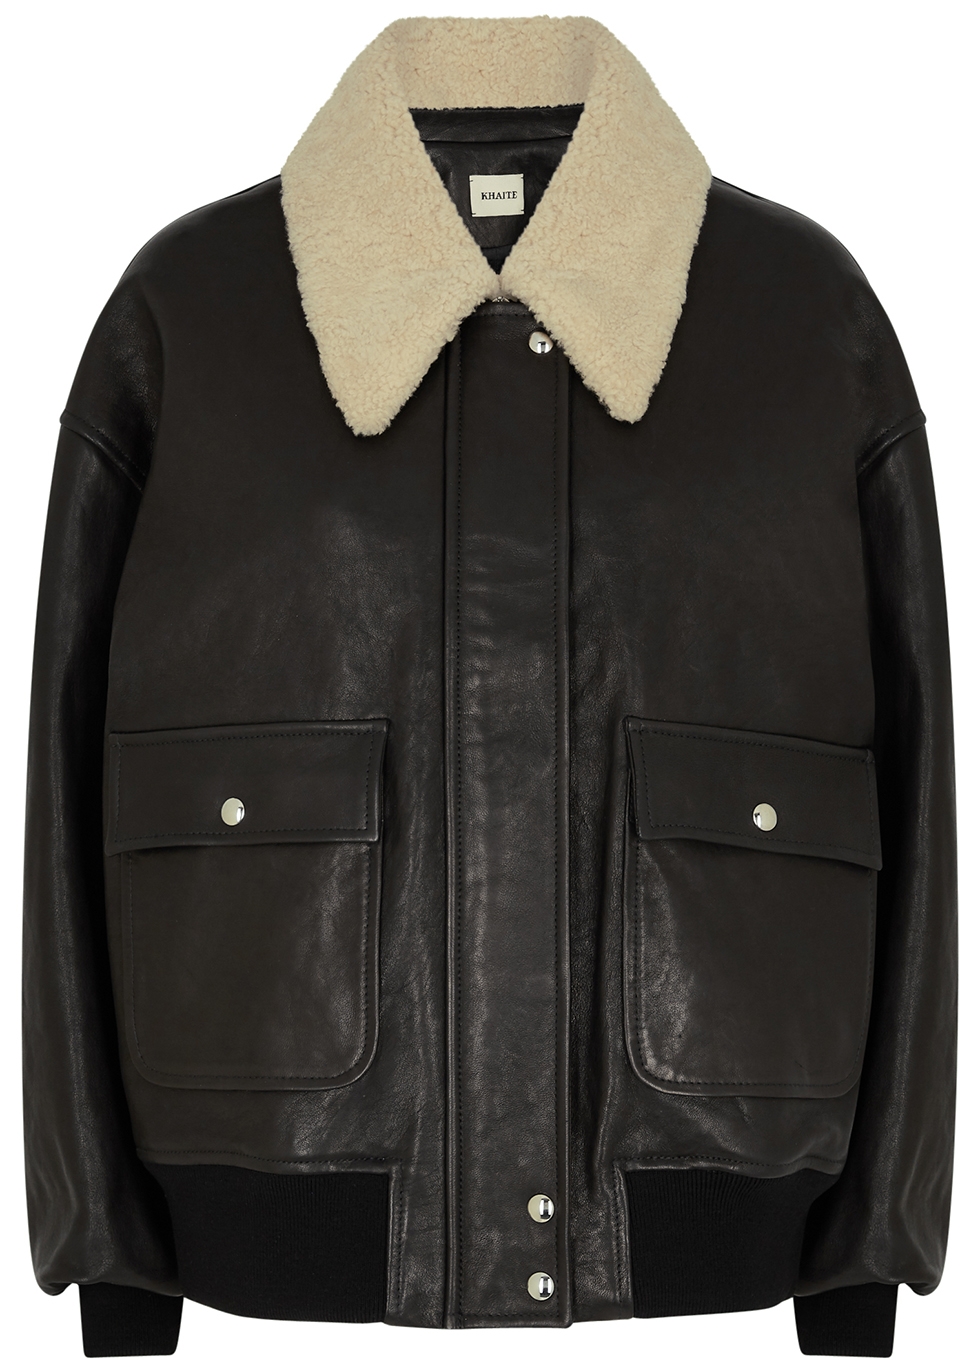 Khaite Shellar black leather jacket